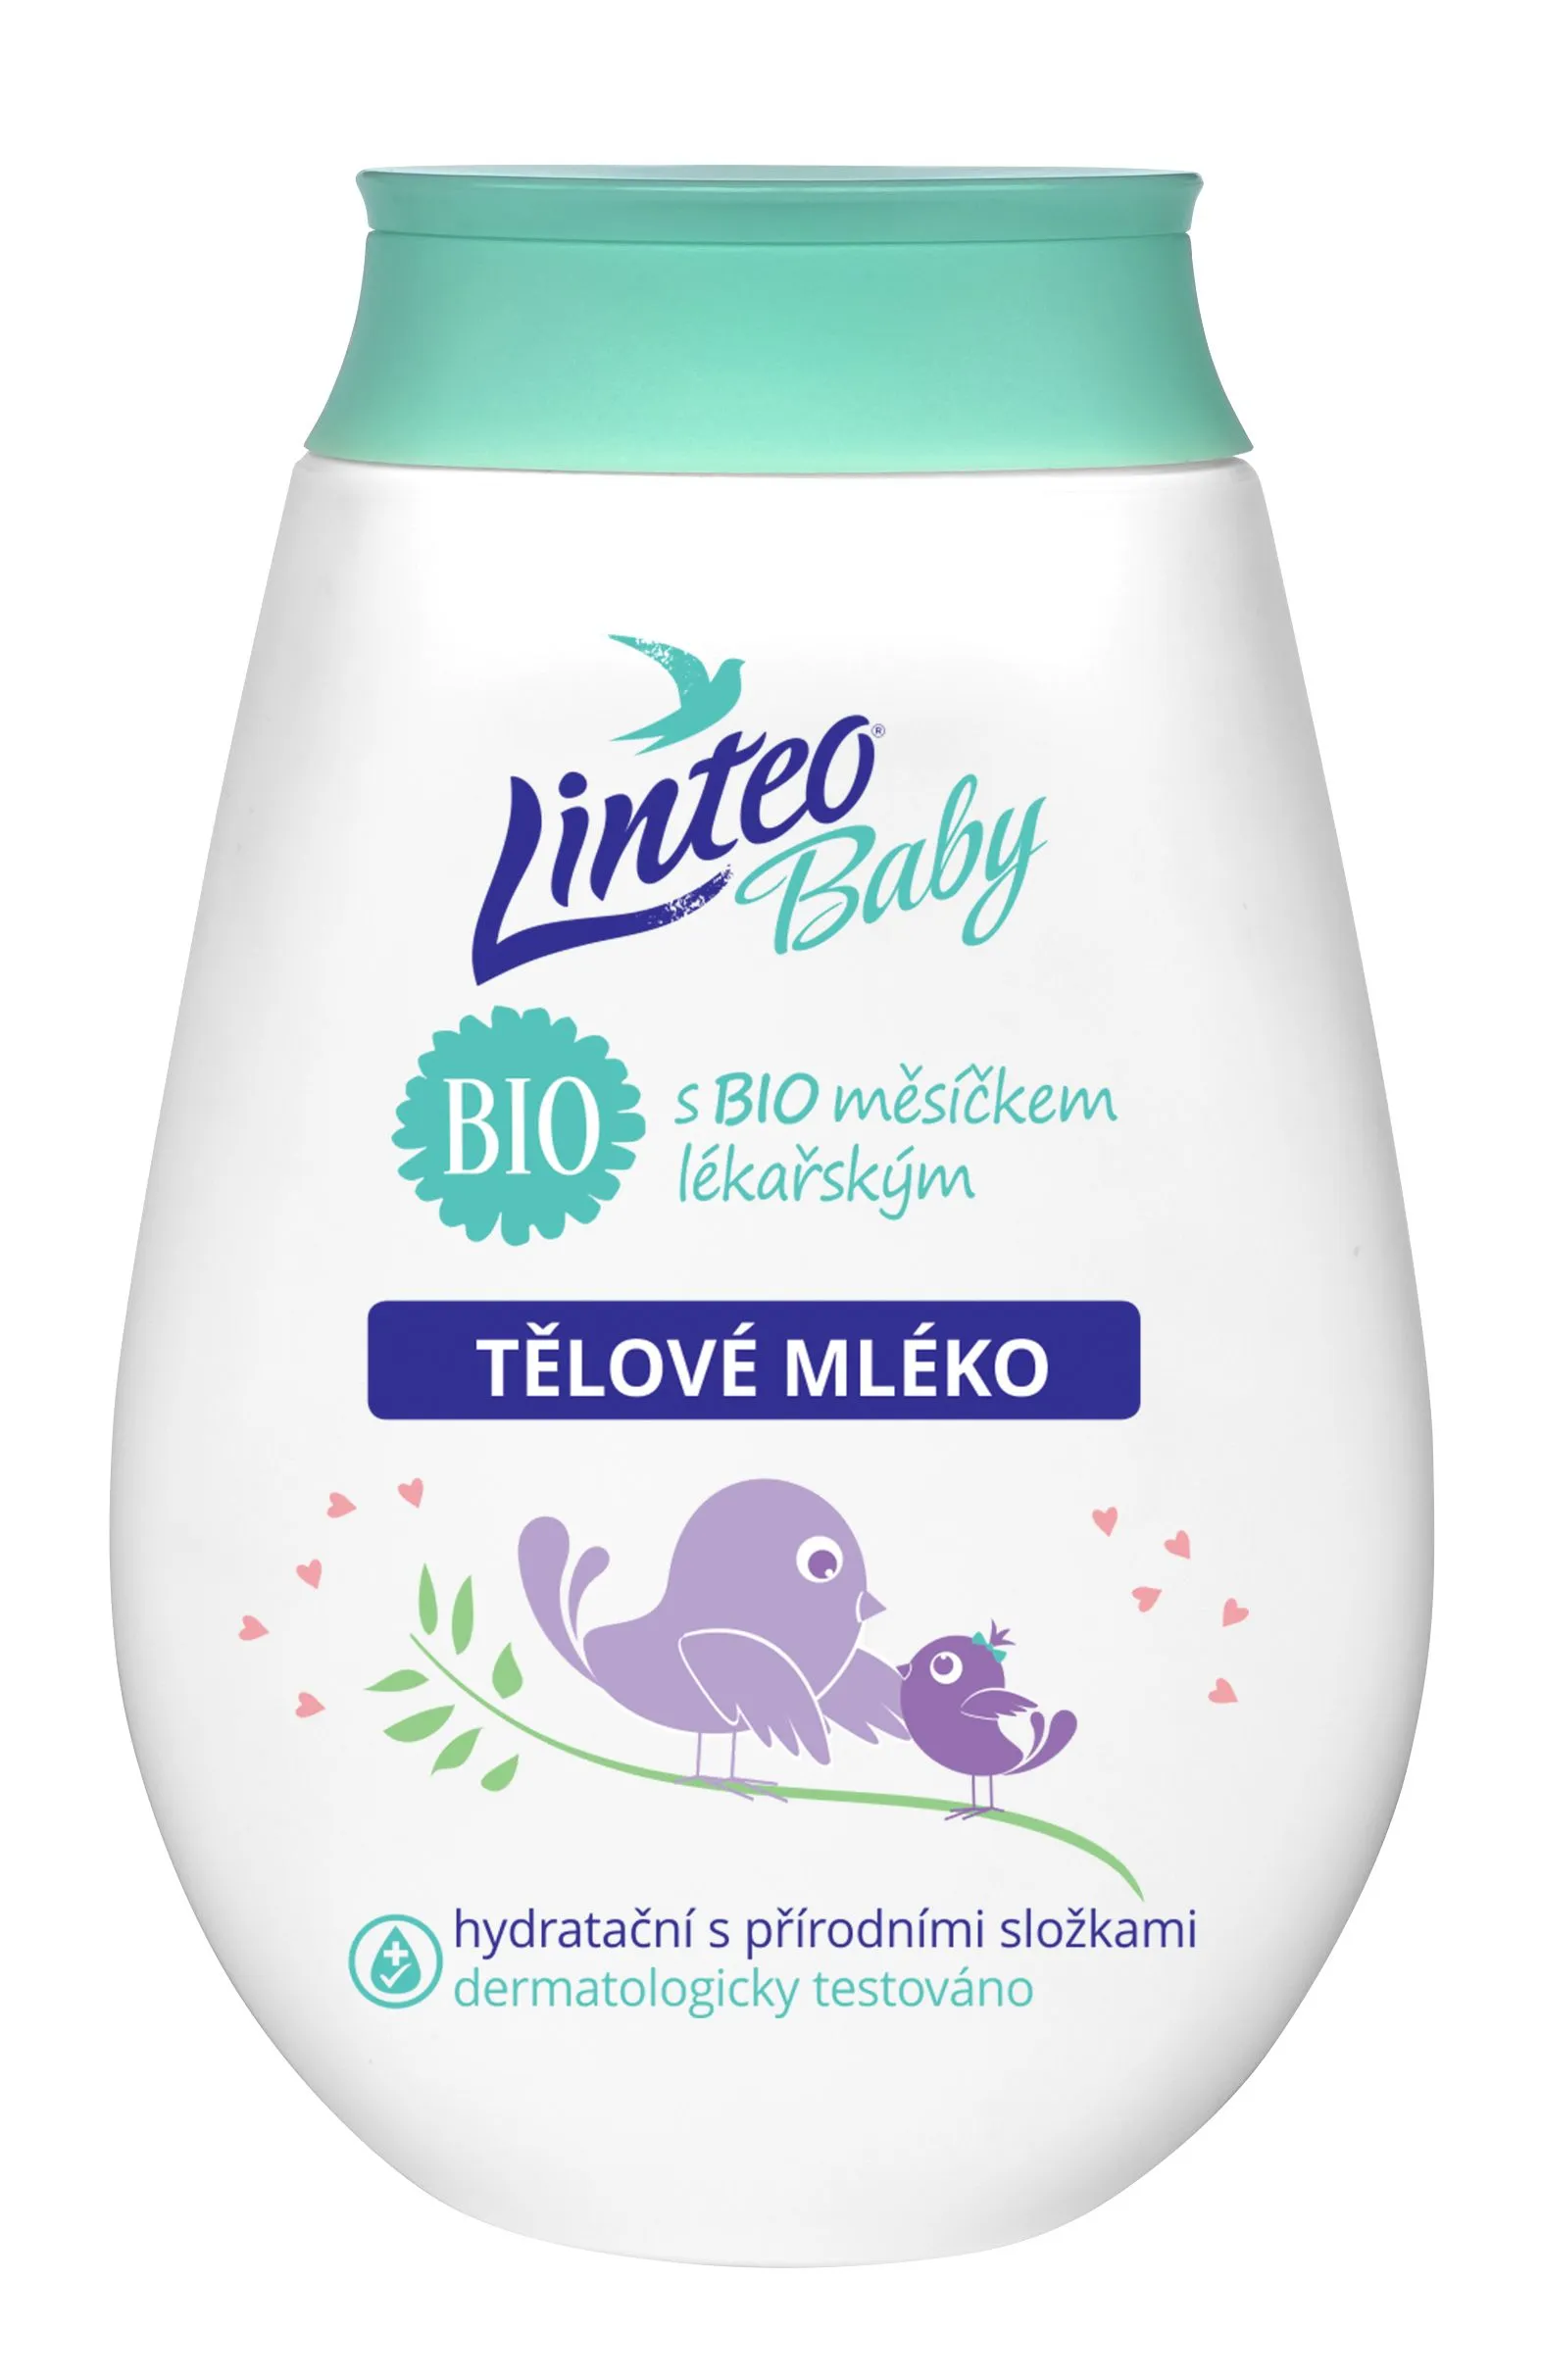 Linteo Baby Dětské tělové mléko s BIO měsíčkem lékařským 250 ml